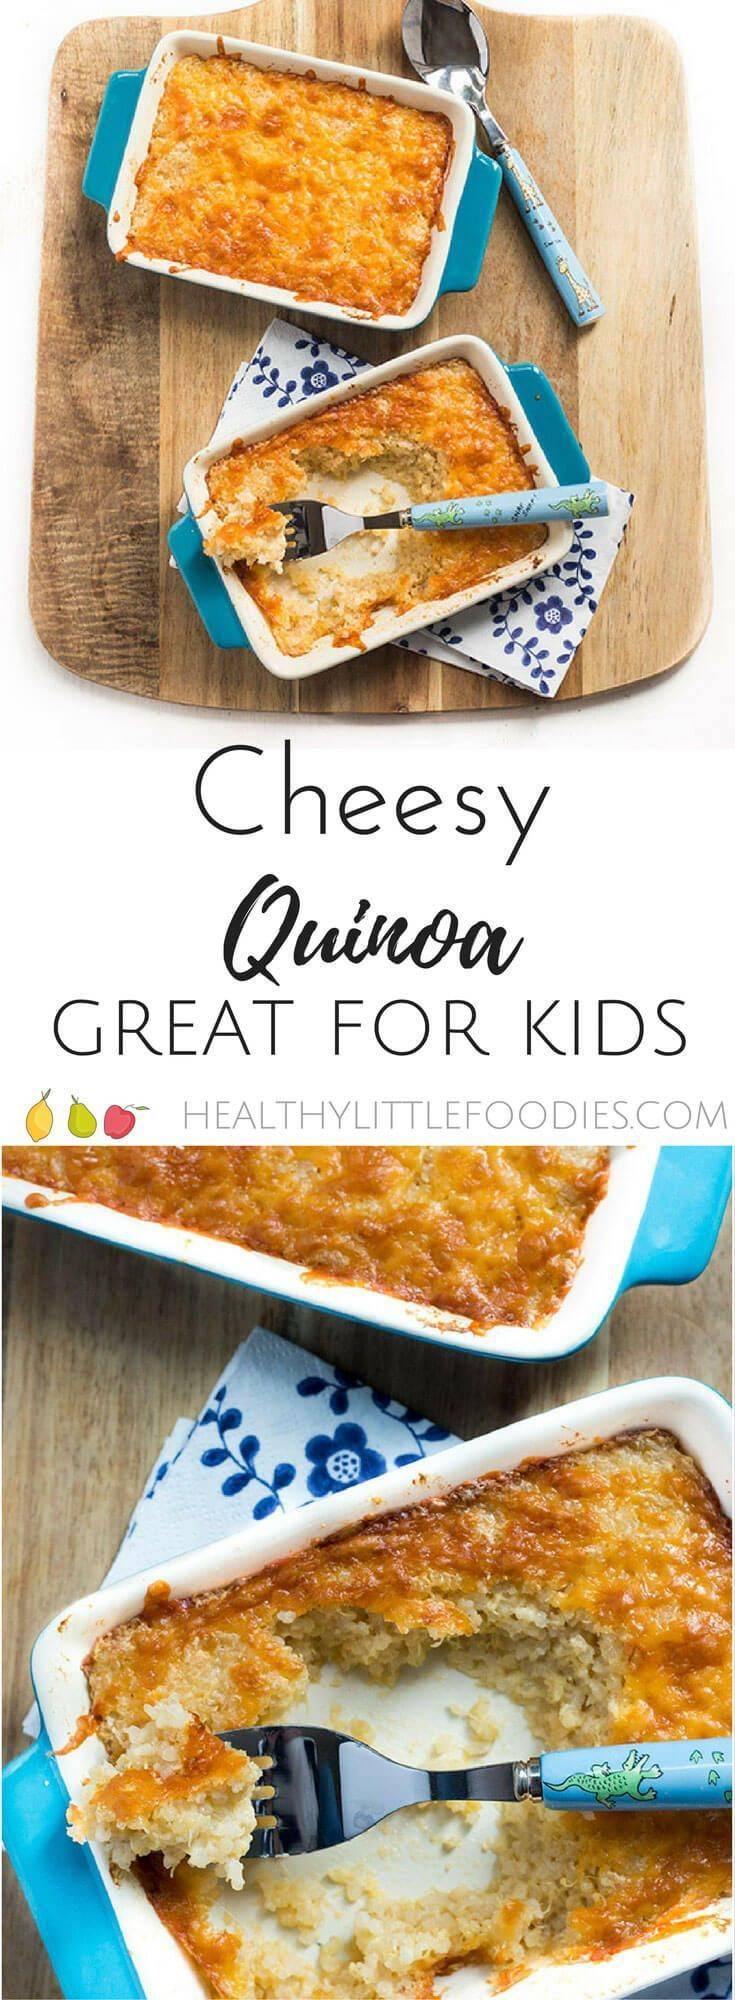 Kid Friendly Quinoa Recipes
 Cheesy Quinoa for Kids Recipe